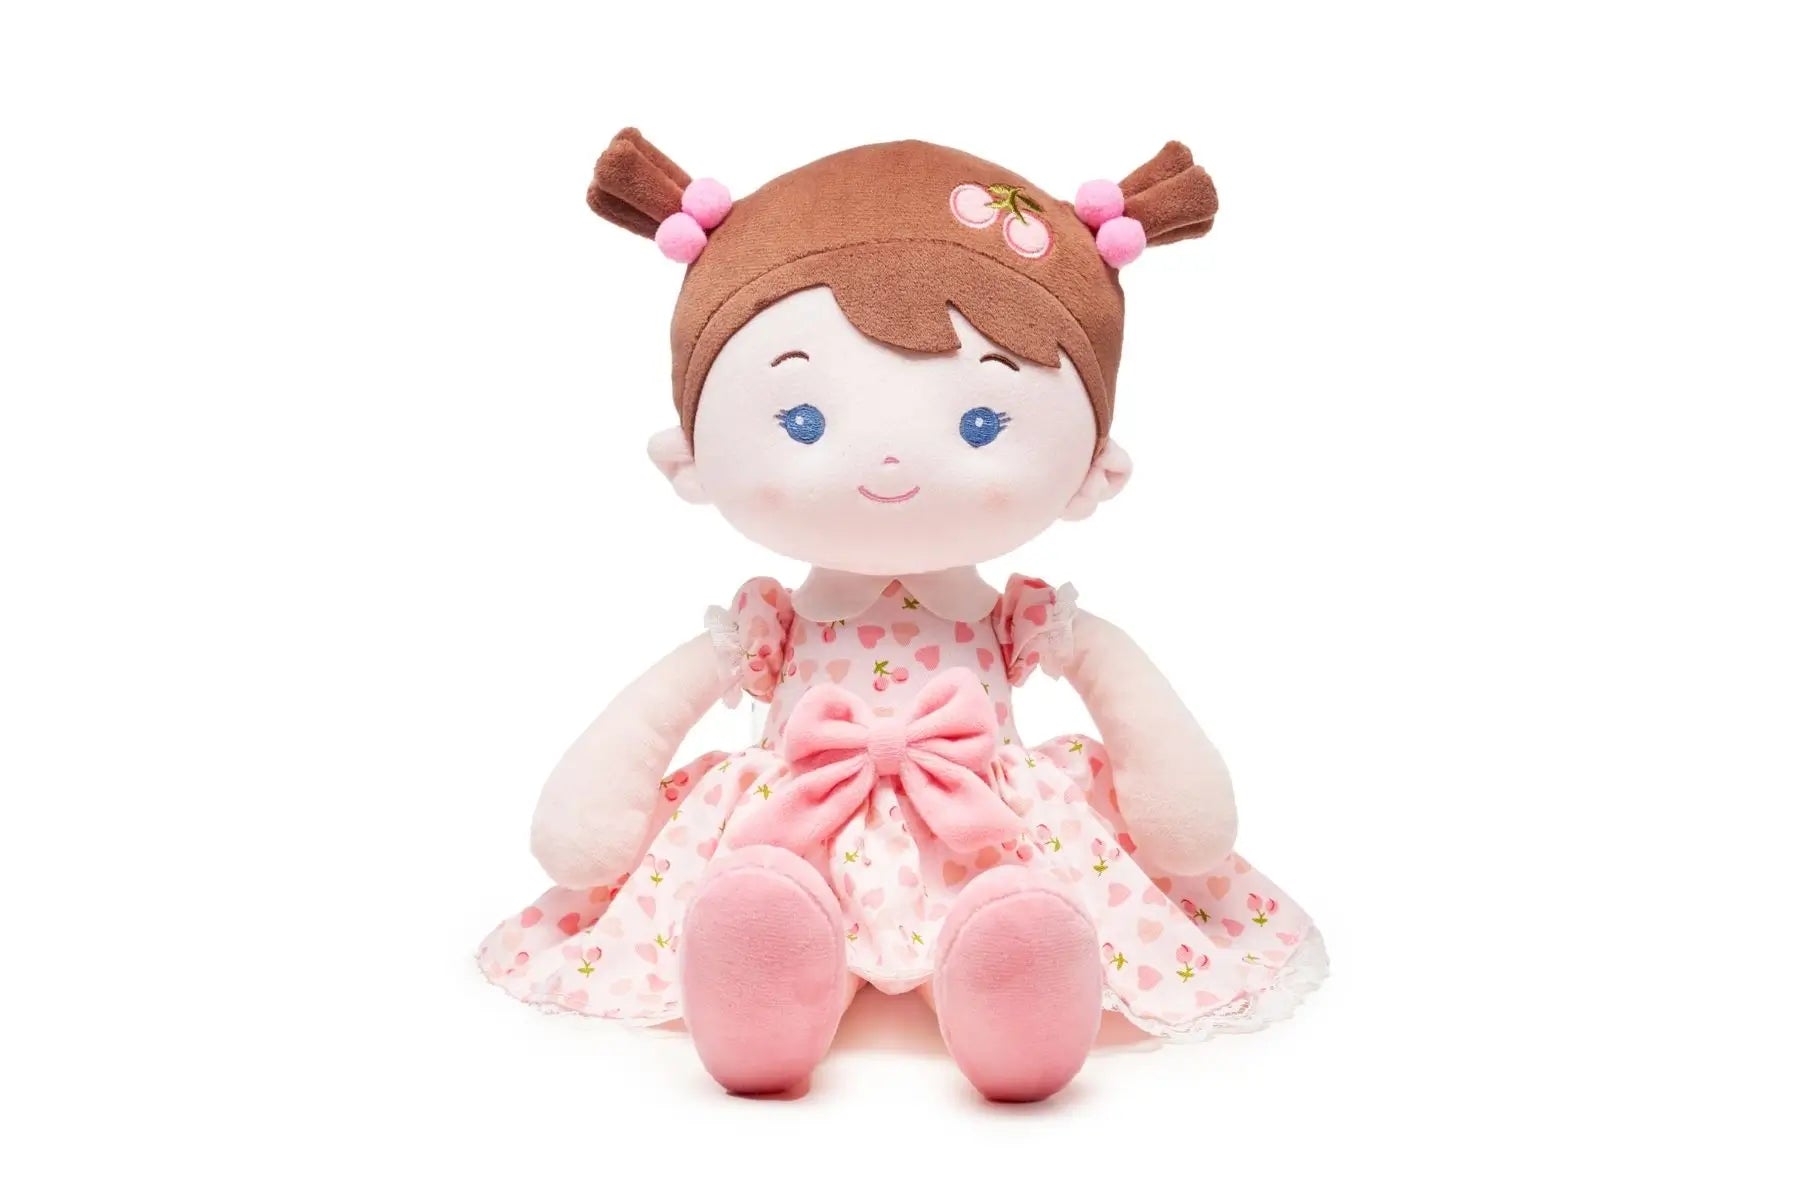 Leyadoll Soft Plush Personalized Leya Doll, My First Baby Doll